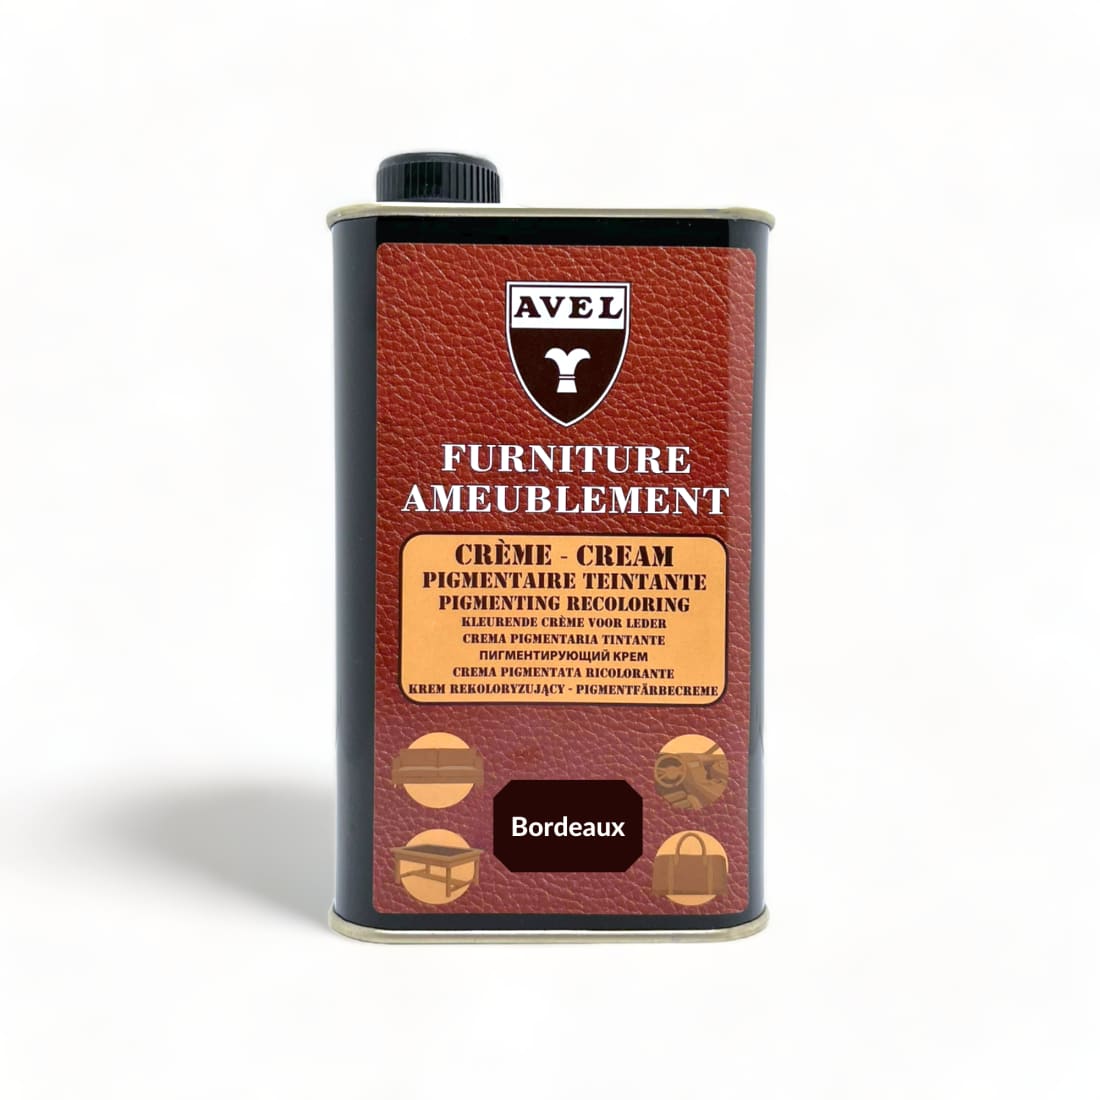 Crème Pigmentaire Teintante Bordeaux - Avel - 375 ml -